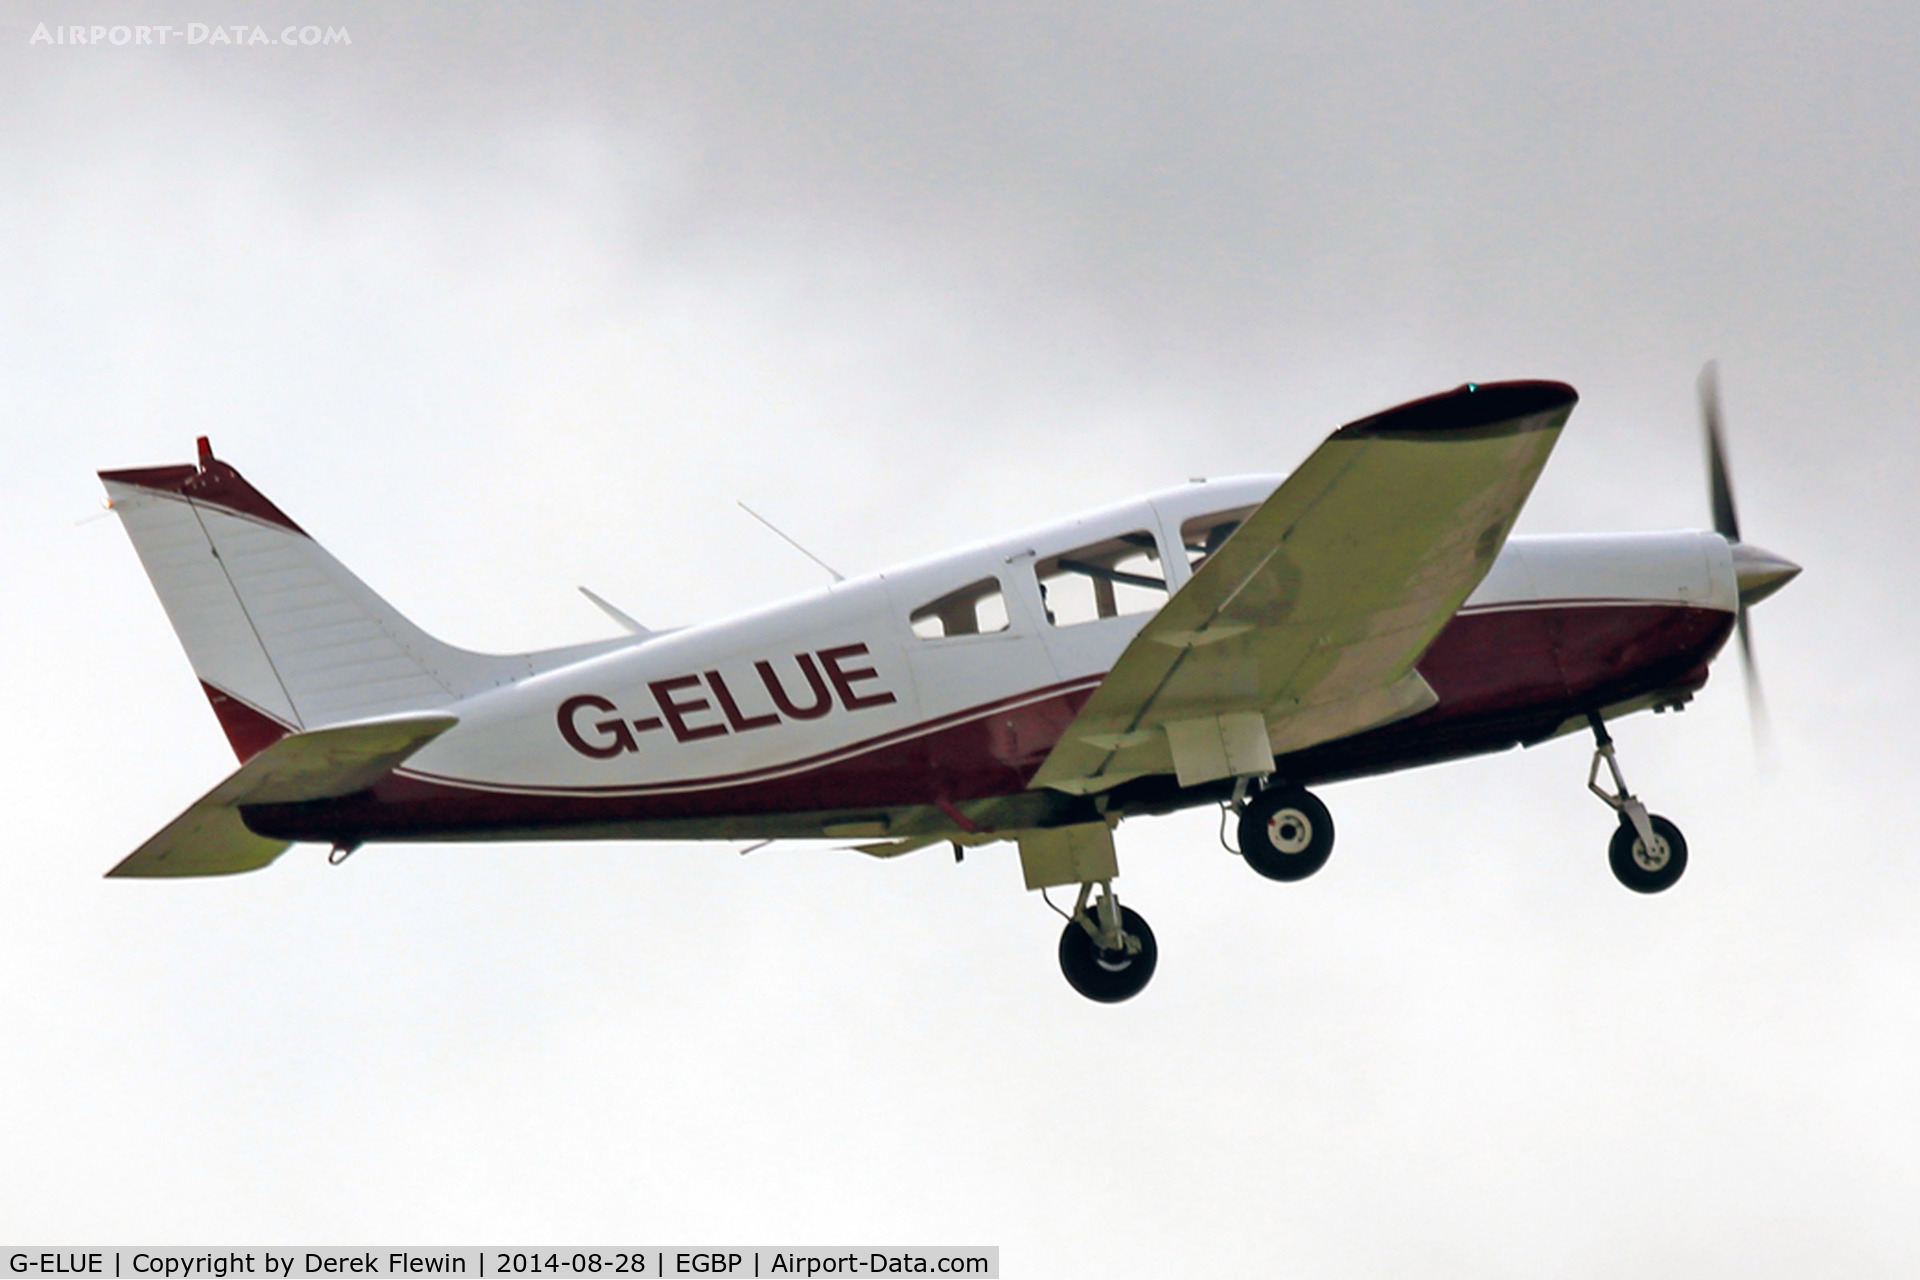 G-ELUE, 1979 Piper PA-28-161 Warrior II C/N 28-7916484, Kemble based, Cherokee Warrior II, seen departing runway 26 at EGBP.